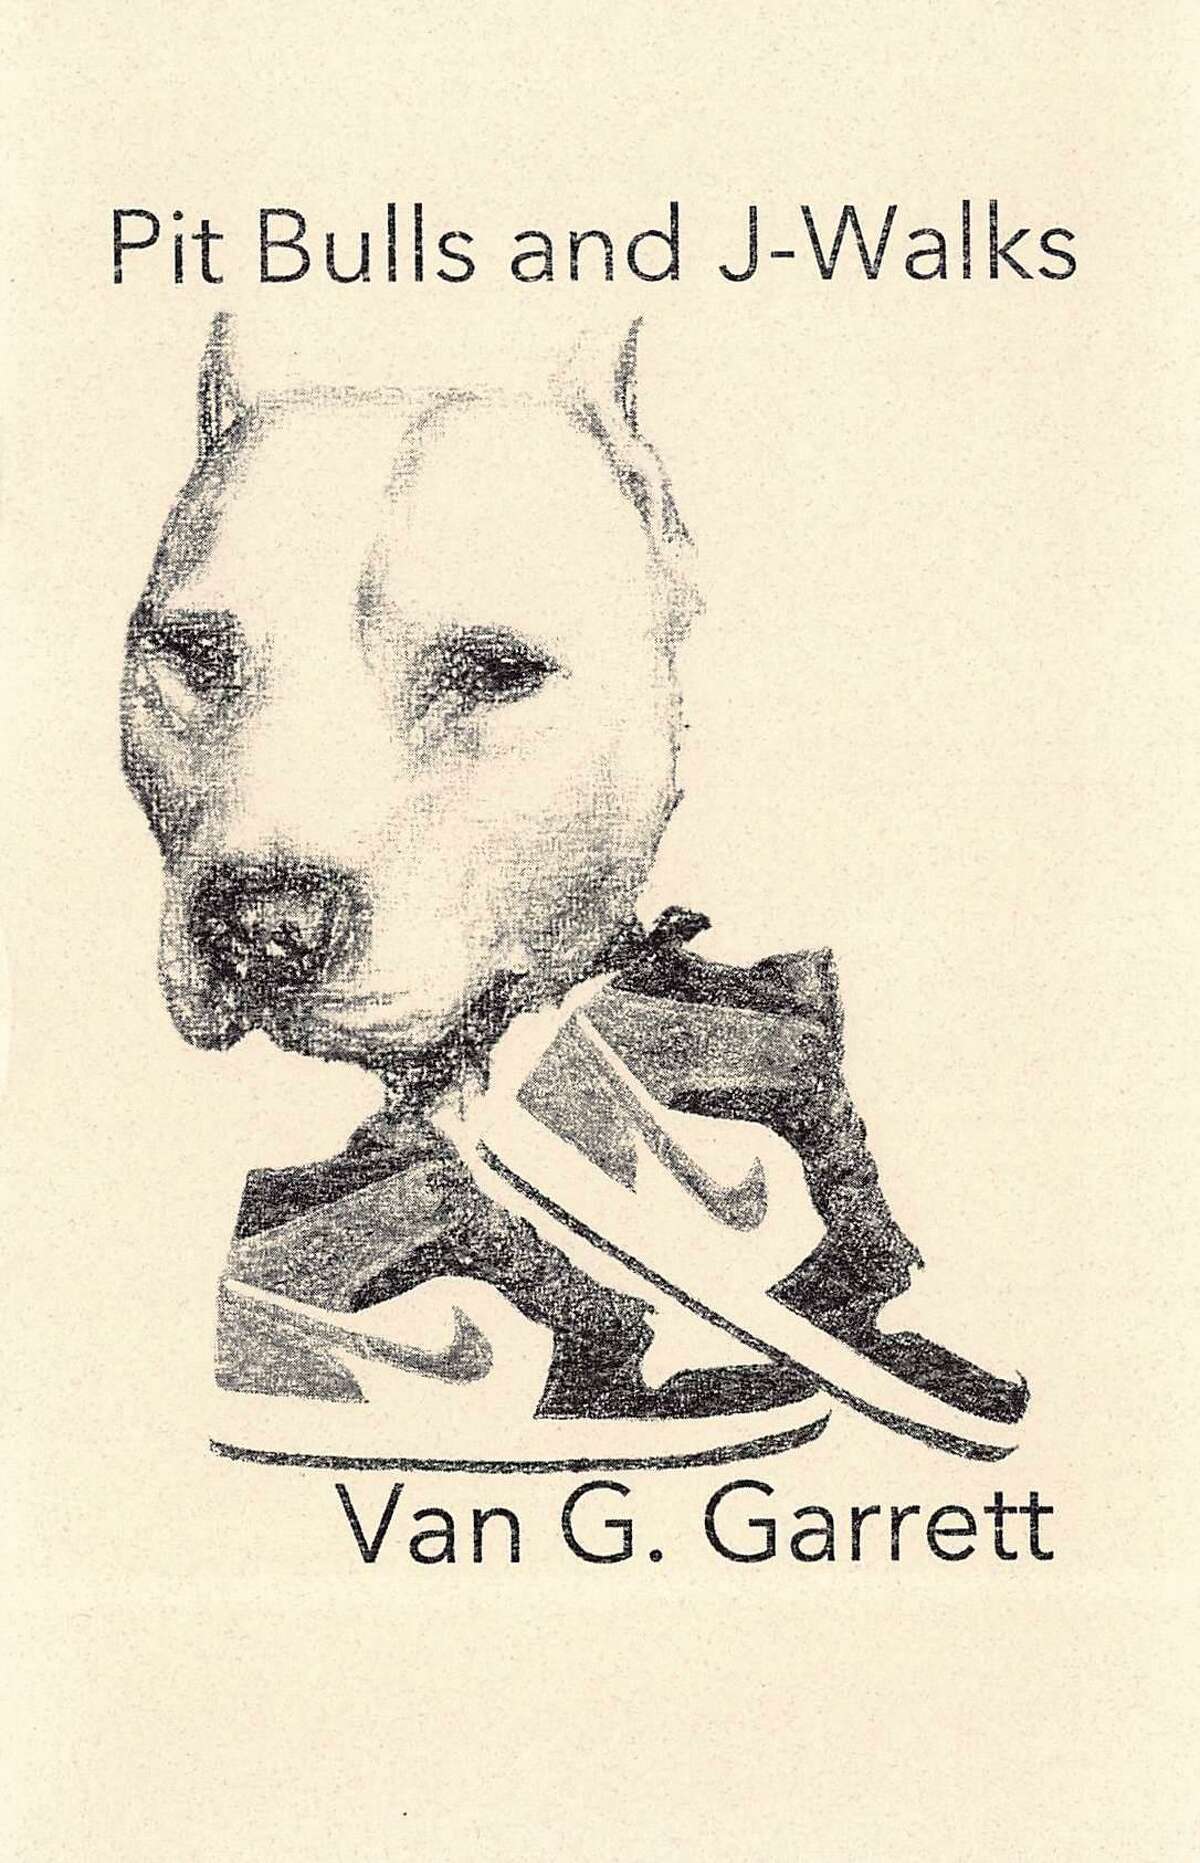 Houston poet Van G. Garrett